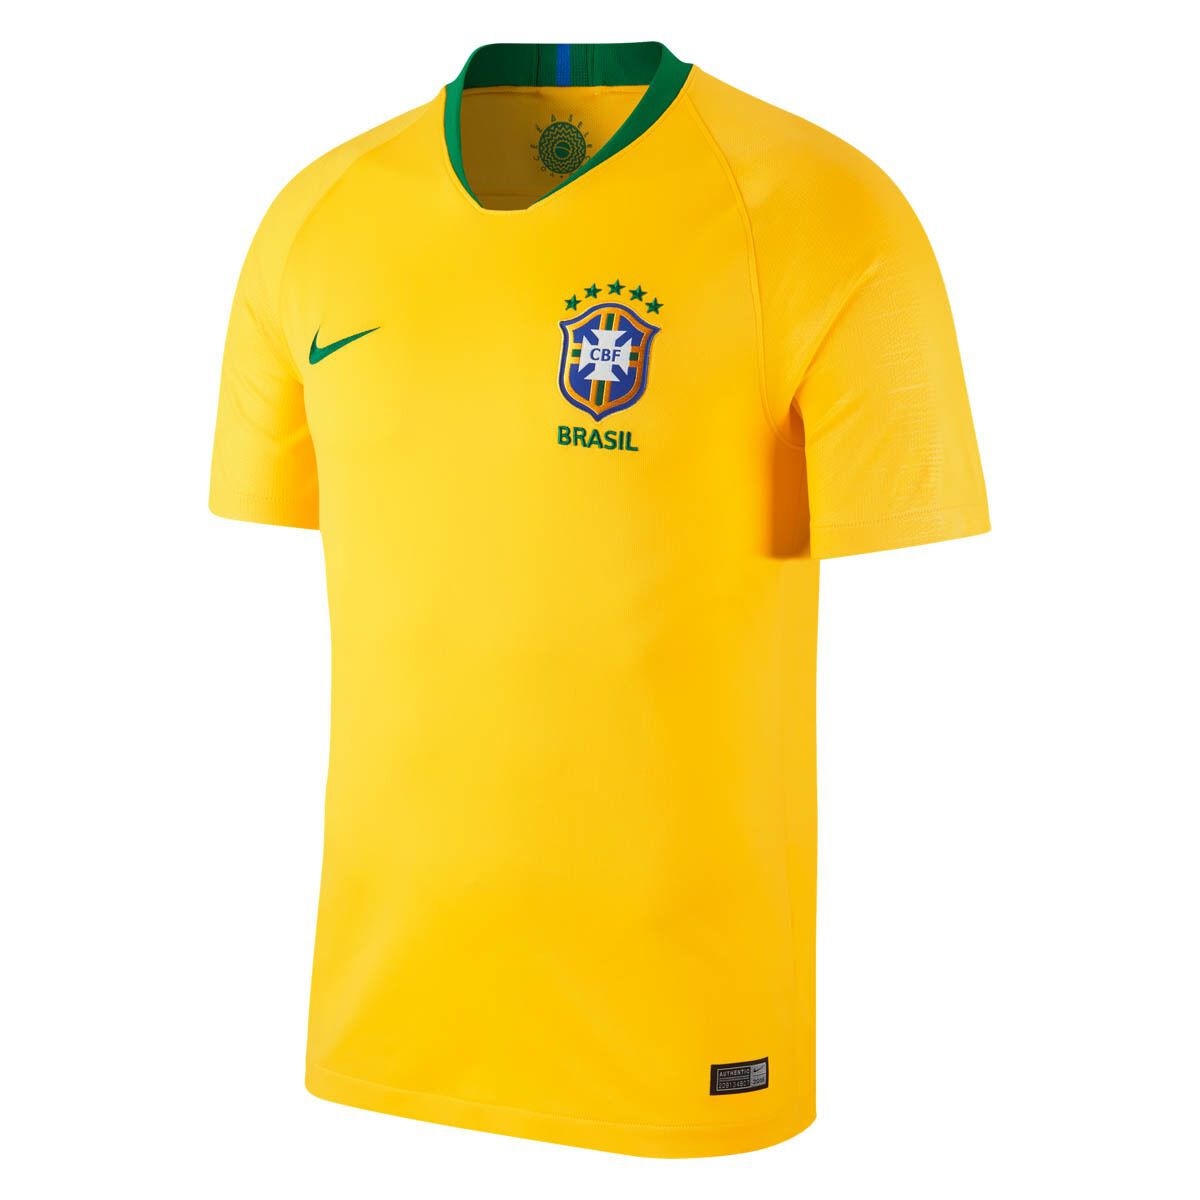 Brazil 2018 Mens Home Football Jersey 